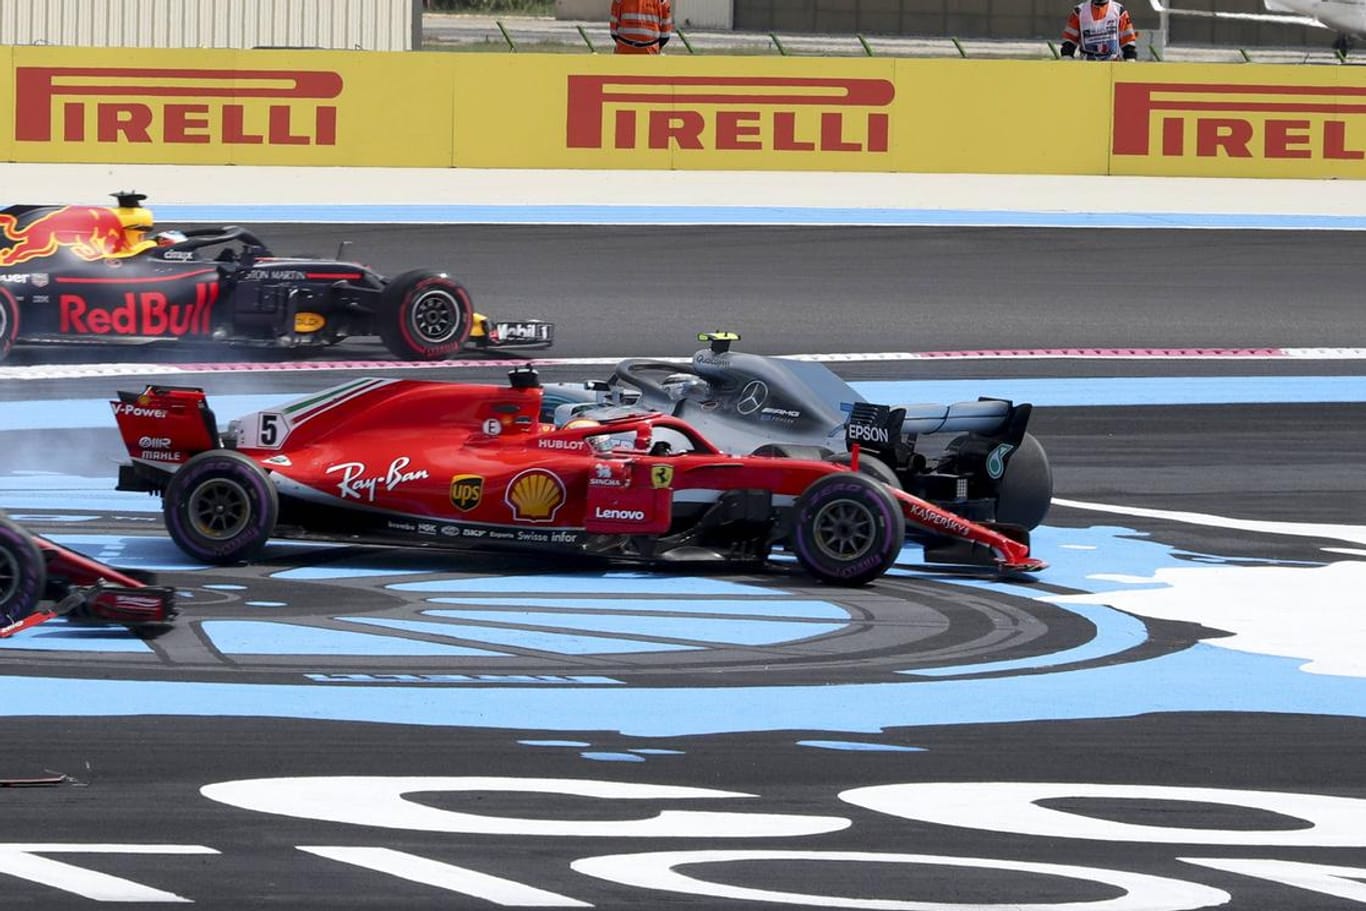 Crash kurz nach dem Start in Frankreich: Sebastian Vettel kollidiert mit Valtteri Bottas.